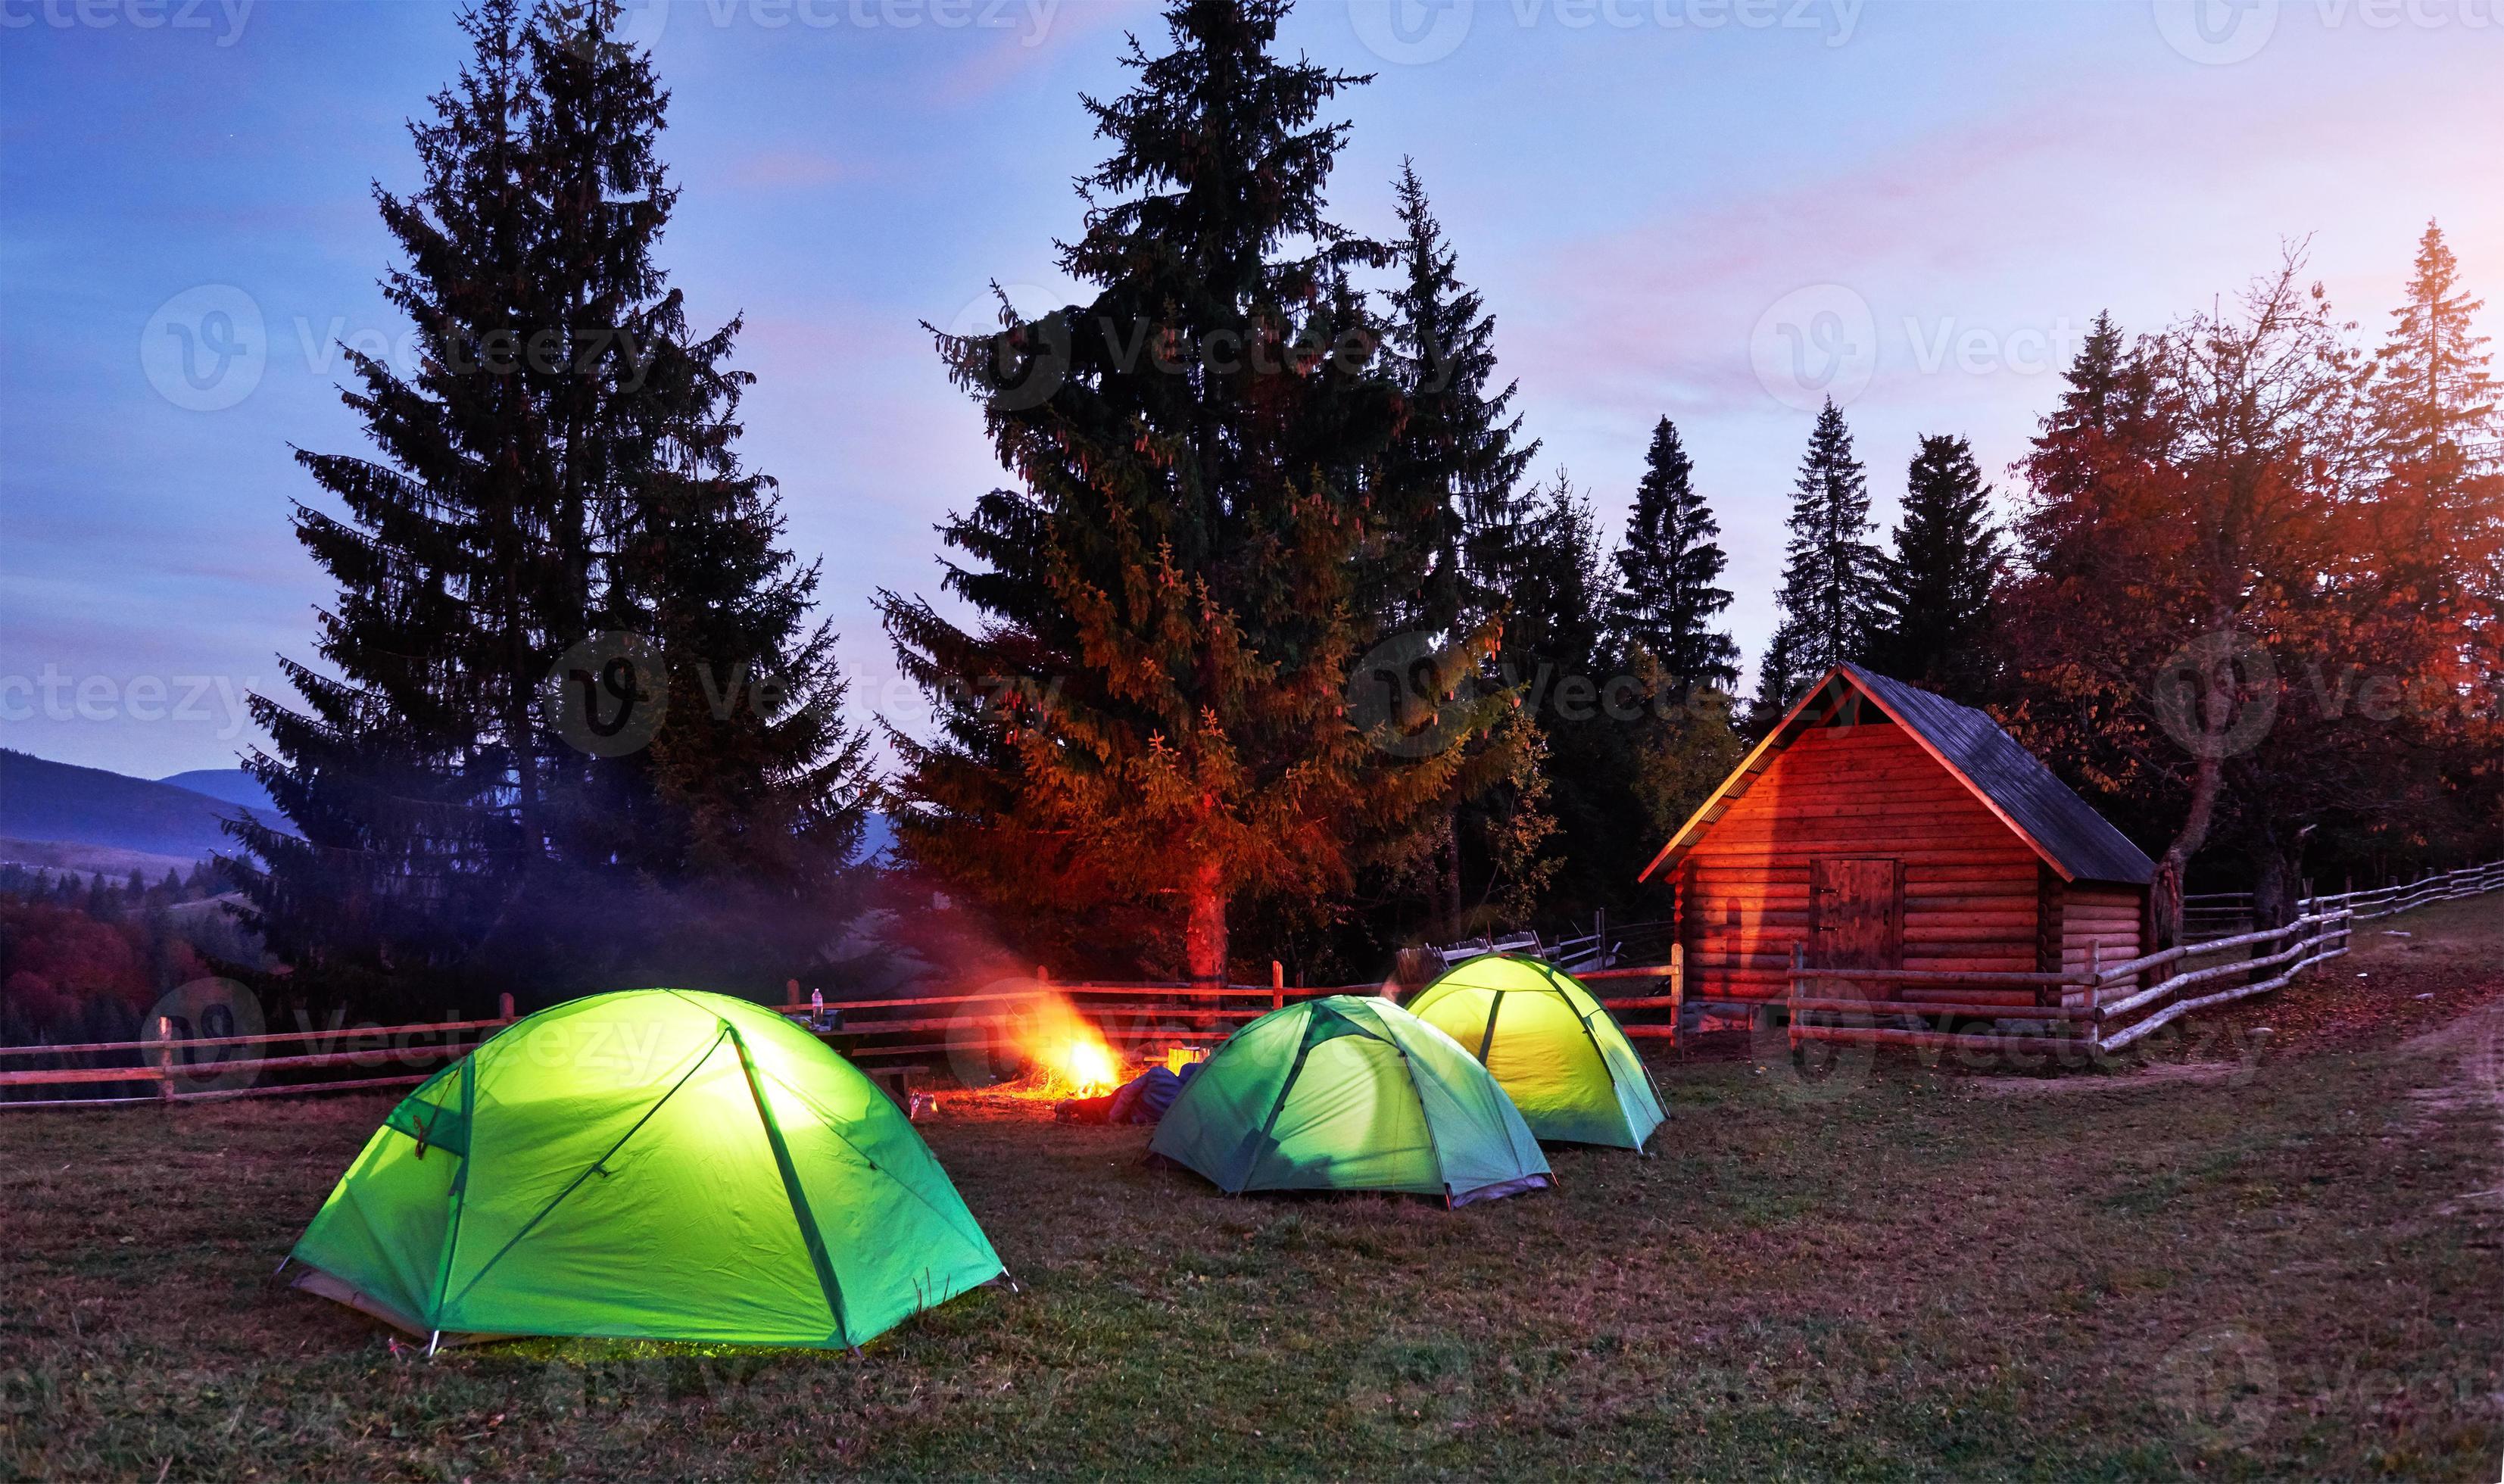 Westers Onheil plannen nacht kamperen. toerist rust uit bij een kampvuur in de buurt van verlichte  tent en houten huis onder een geweldige nachtelijke hemel vol sterren en  melkweg. astrofotografie 6347826 stockfoto bij Vecteezy